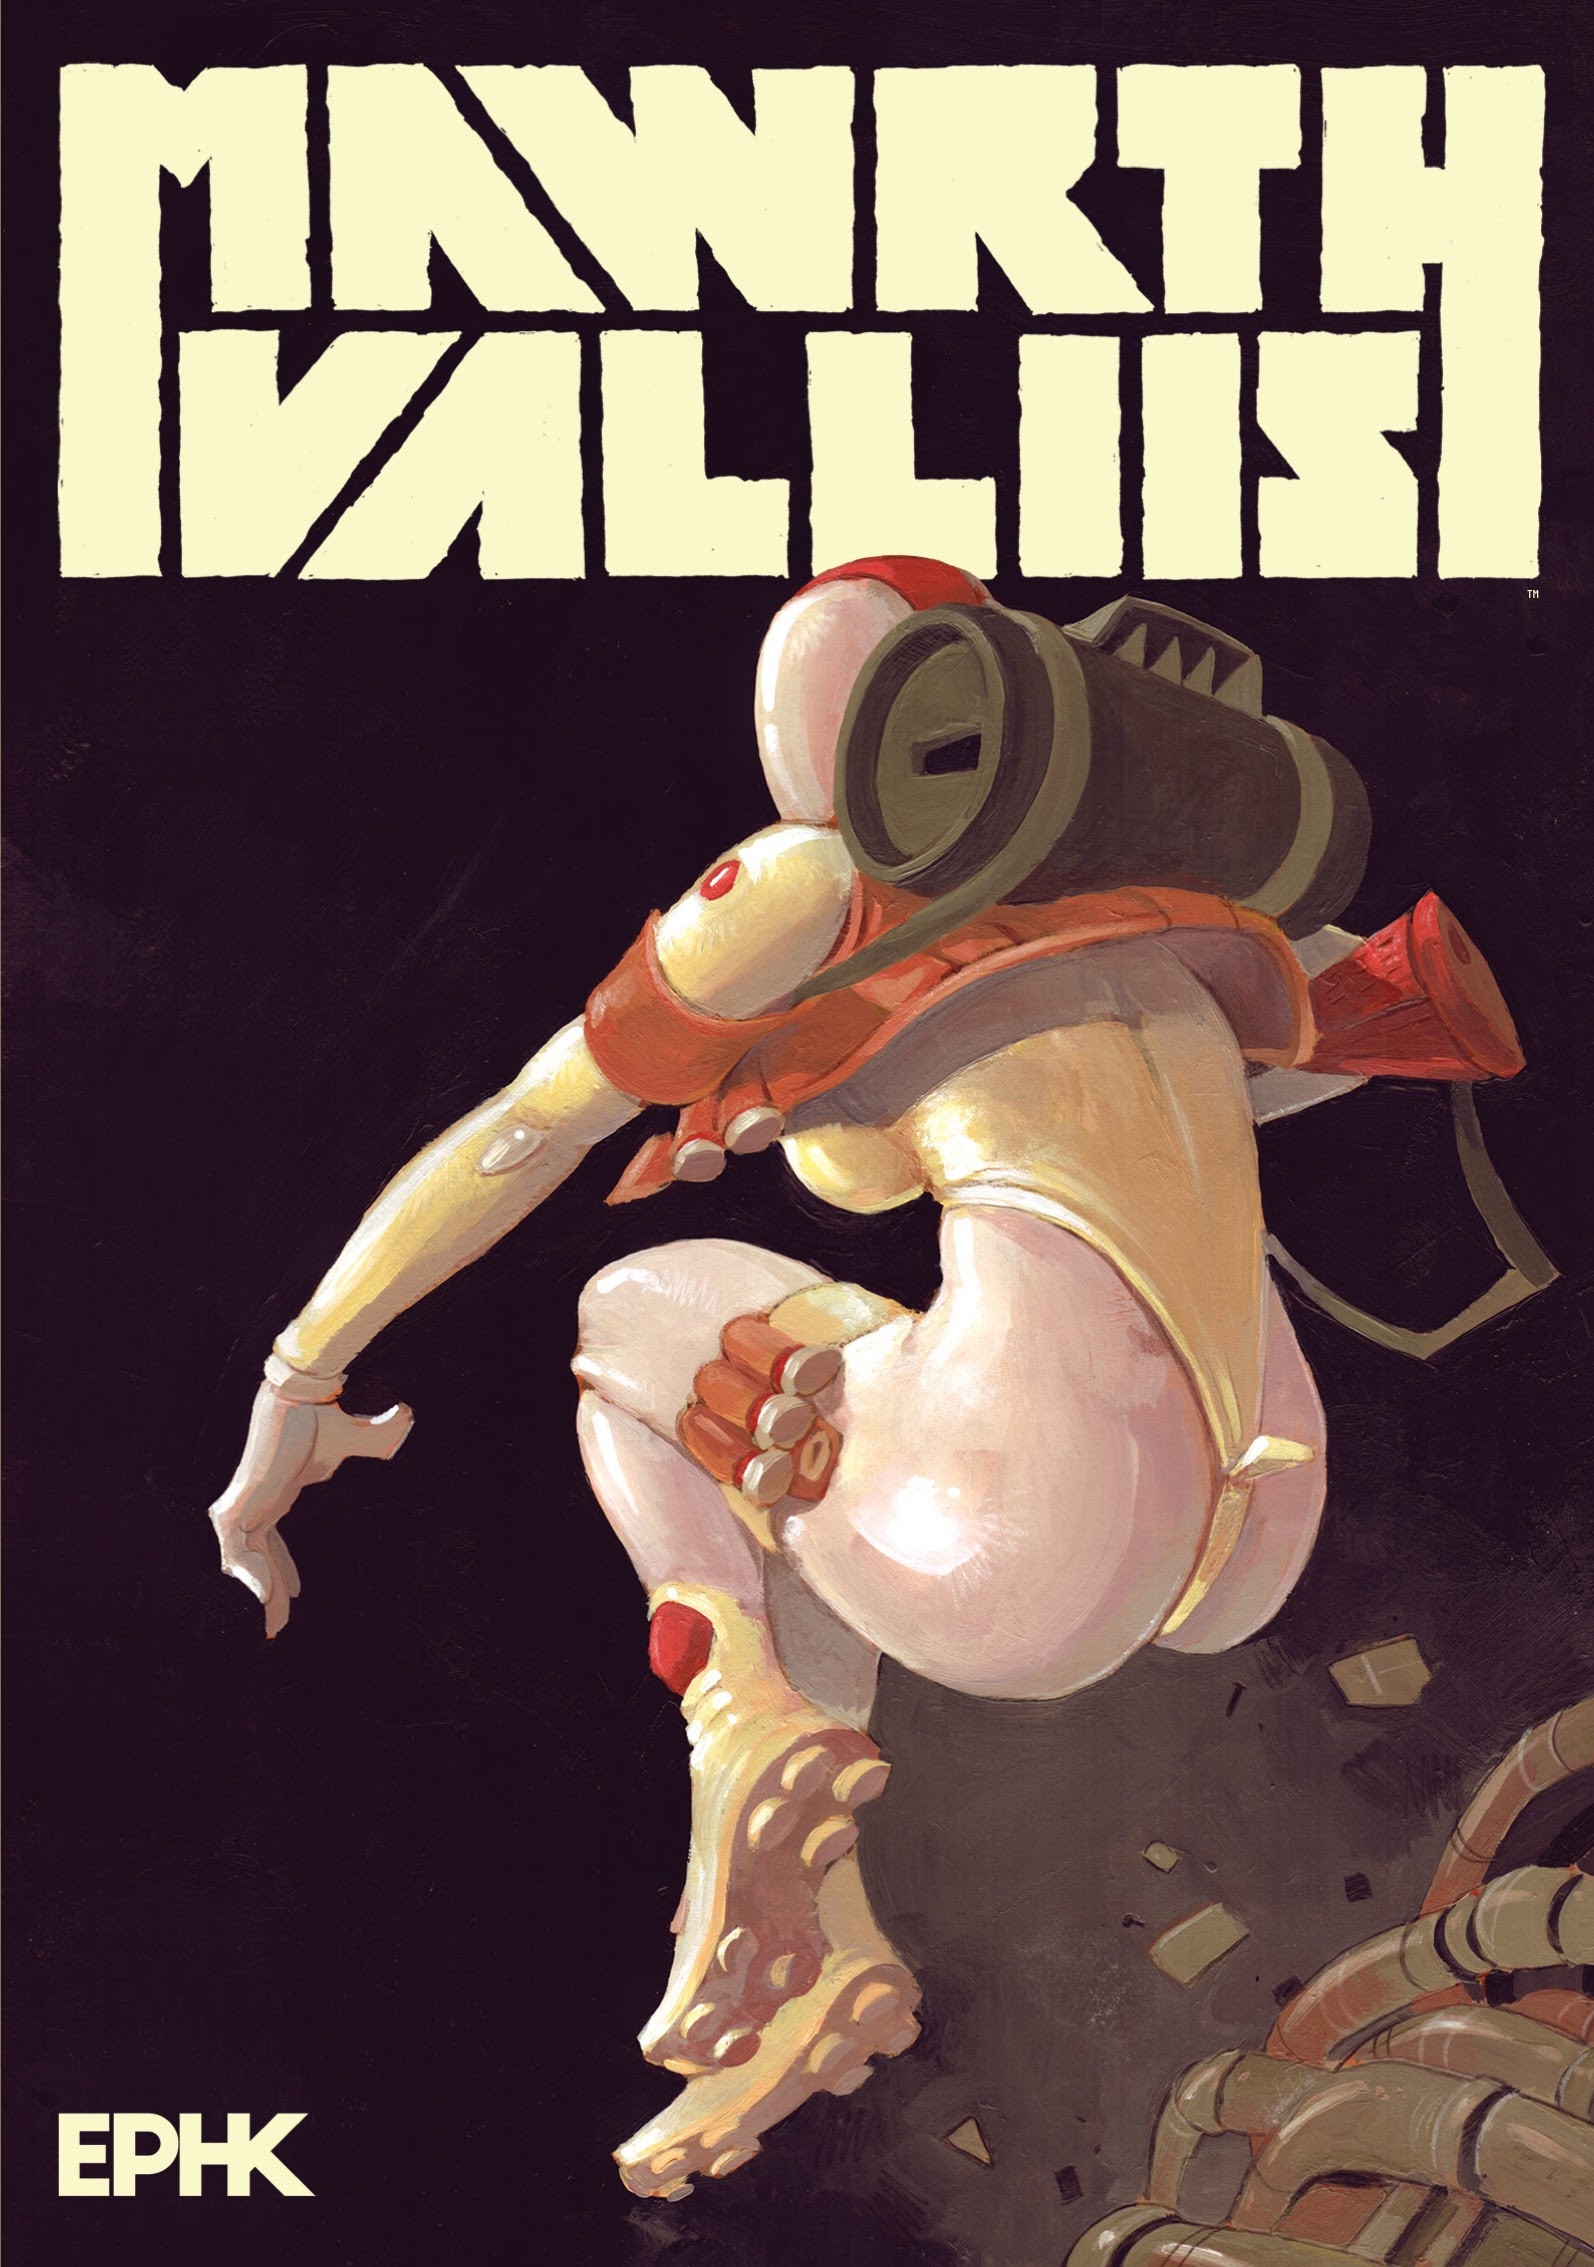 Read online Mawrth Valliis comic -  Issue # TPB - 1